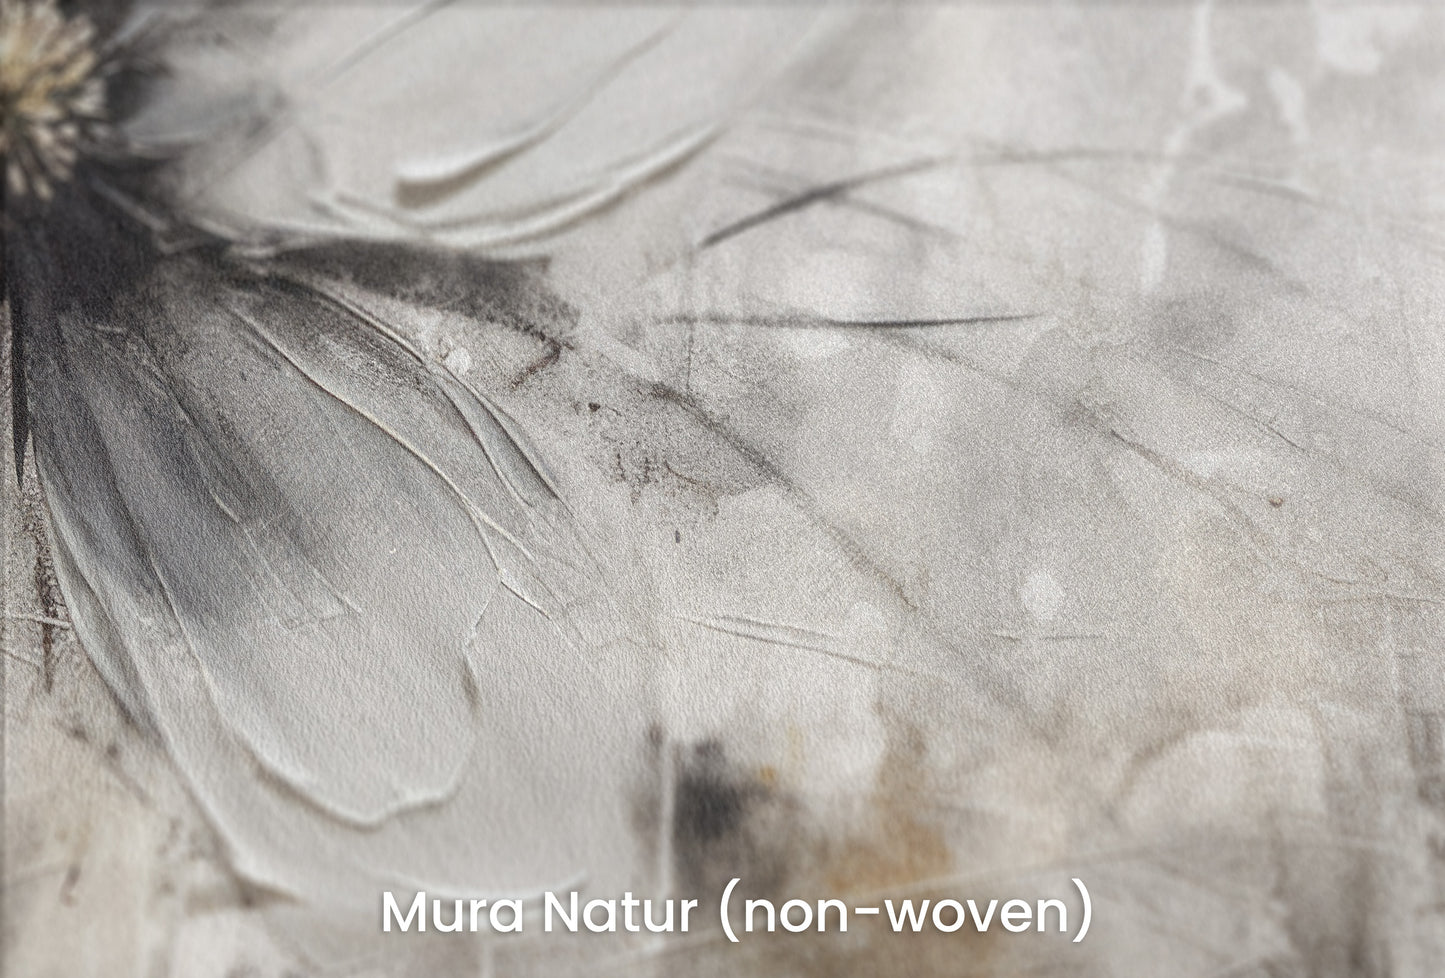 Zbliżenie na artystyczną fototapetę o nazwie MONOCHROME FLORAL ELEGANCE na podłożu Mura Natur (non-woven) - naturalne i ekologiczne podłoże.